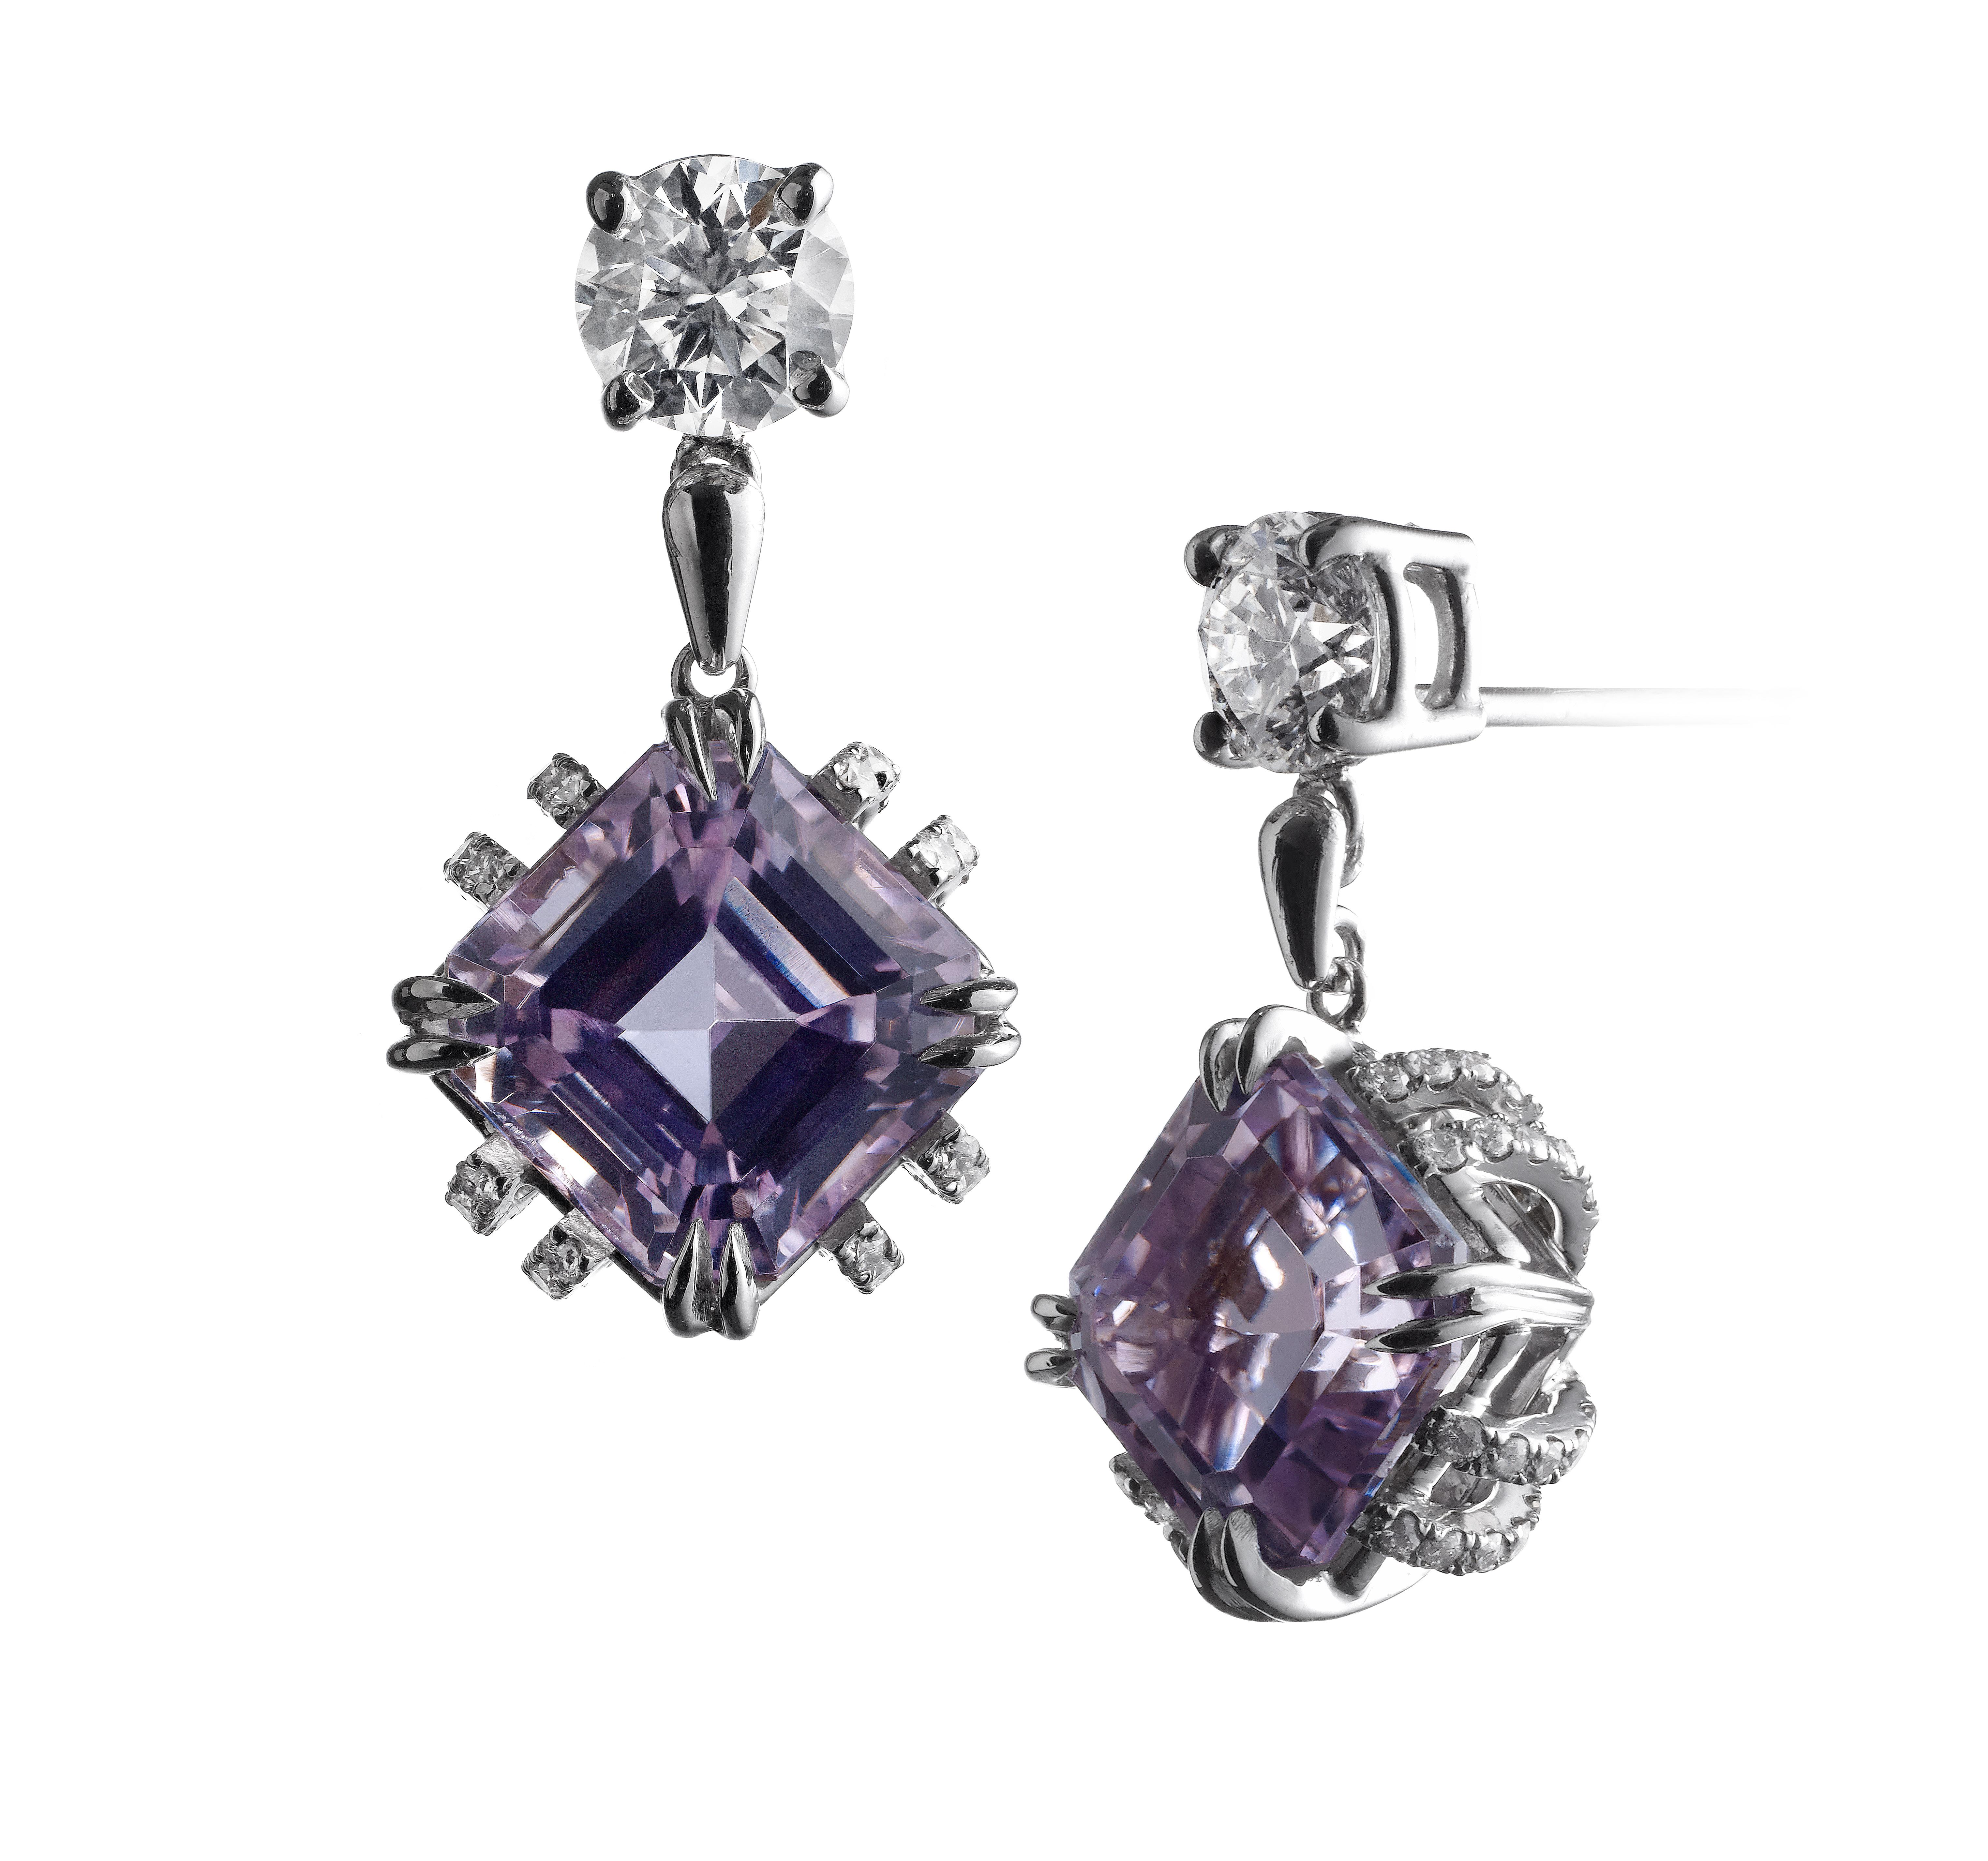 Contemporary Alexandra Mor Asscher-Cut Kunzite and Diamond Earrings For Sale